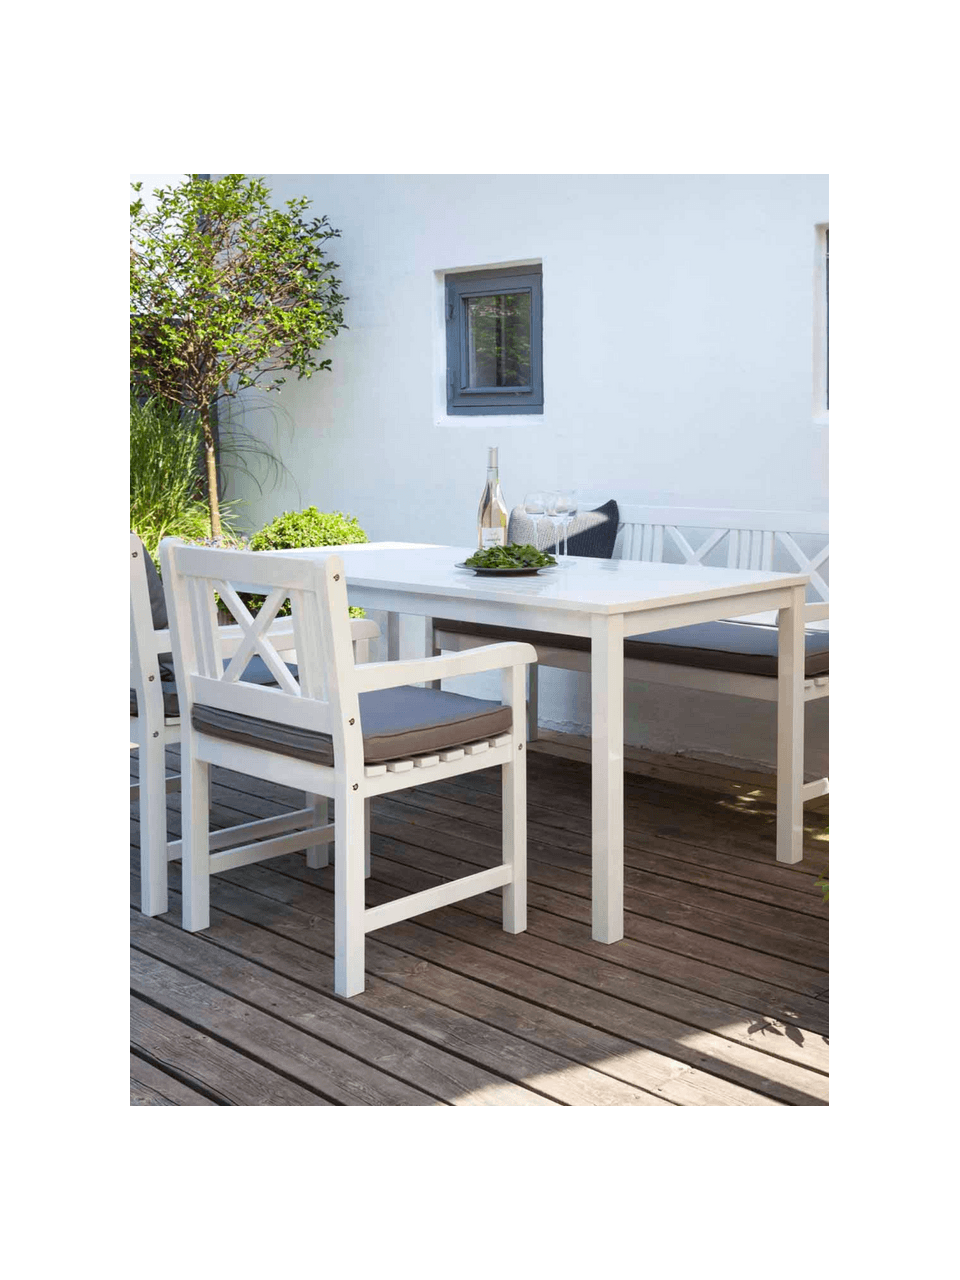 Garten-Esstisch Rosenborg aus Holz in Weiß, 165 x 80 cm, Mahagoniholz, lackiert, Weiß, B 165 x T 80 cm